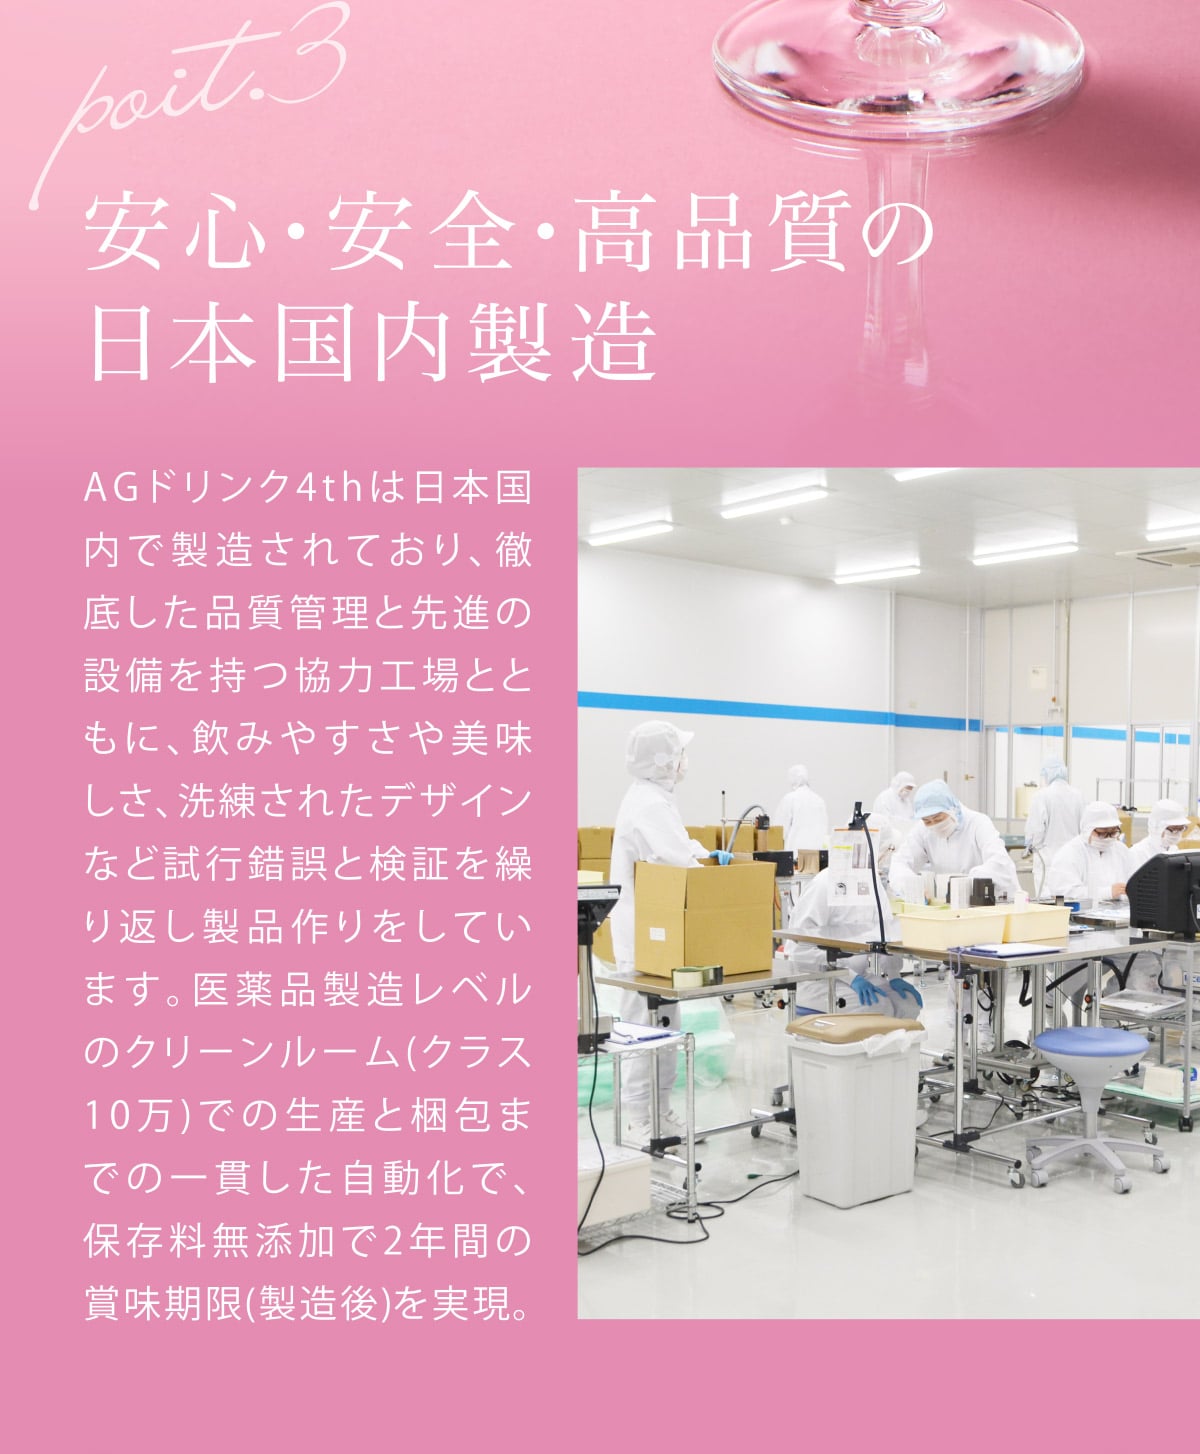 安心、安全、高品質の日本国内製造。AGドリンク4thは日本国内で製造されており、徹底した品質管理と先進の設備を持つ協力工場とともに、飲みやすさや美味しさ、洗礼されたデザインなど試行錯誤と検証を繰り返し製品作りをしています。医薬品製造レベルのクリーンルーム(クラス10万)での生産と梱包までの一貫した自動化で、保存料無添加で2年間の賞味期限(製造後)を実現。